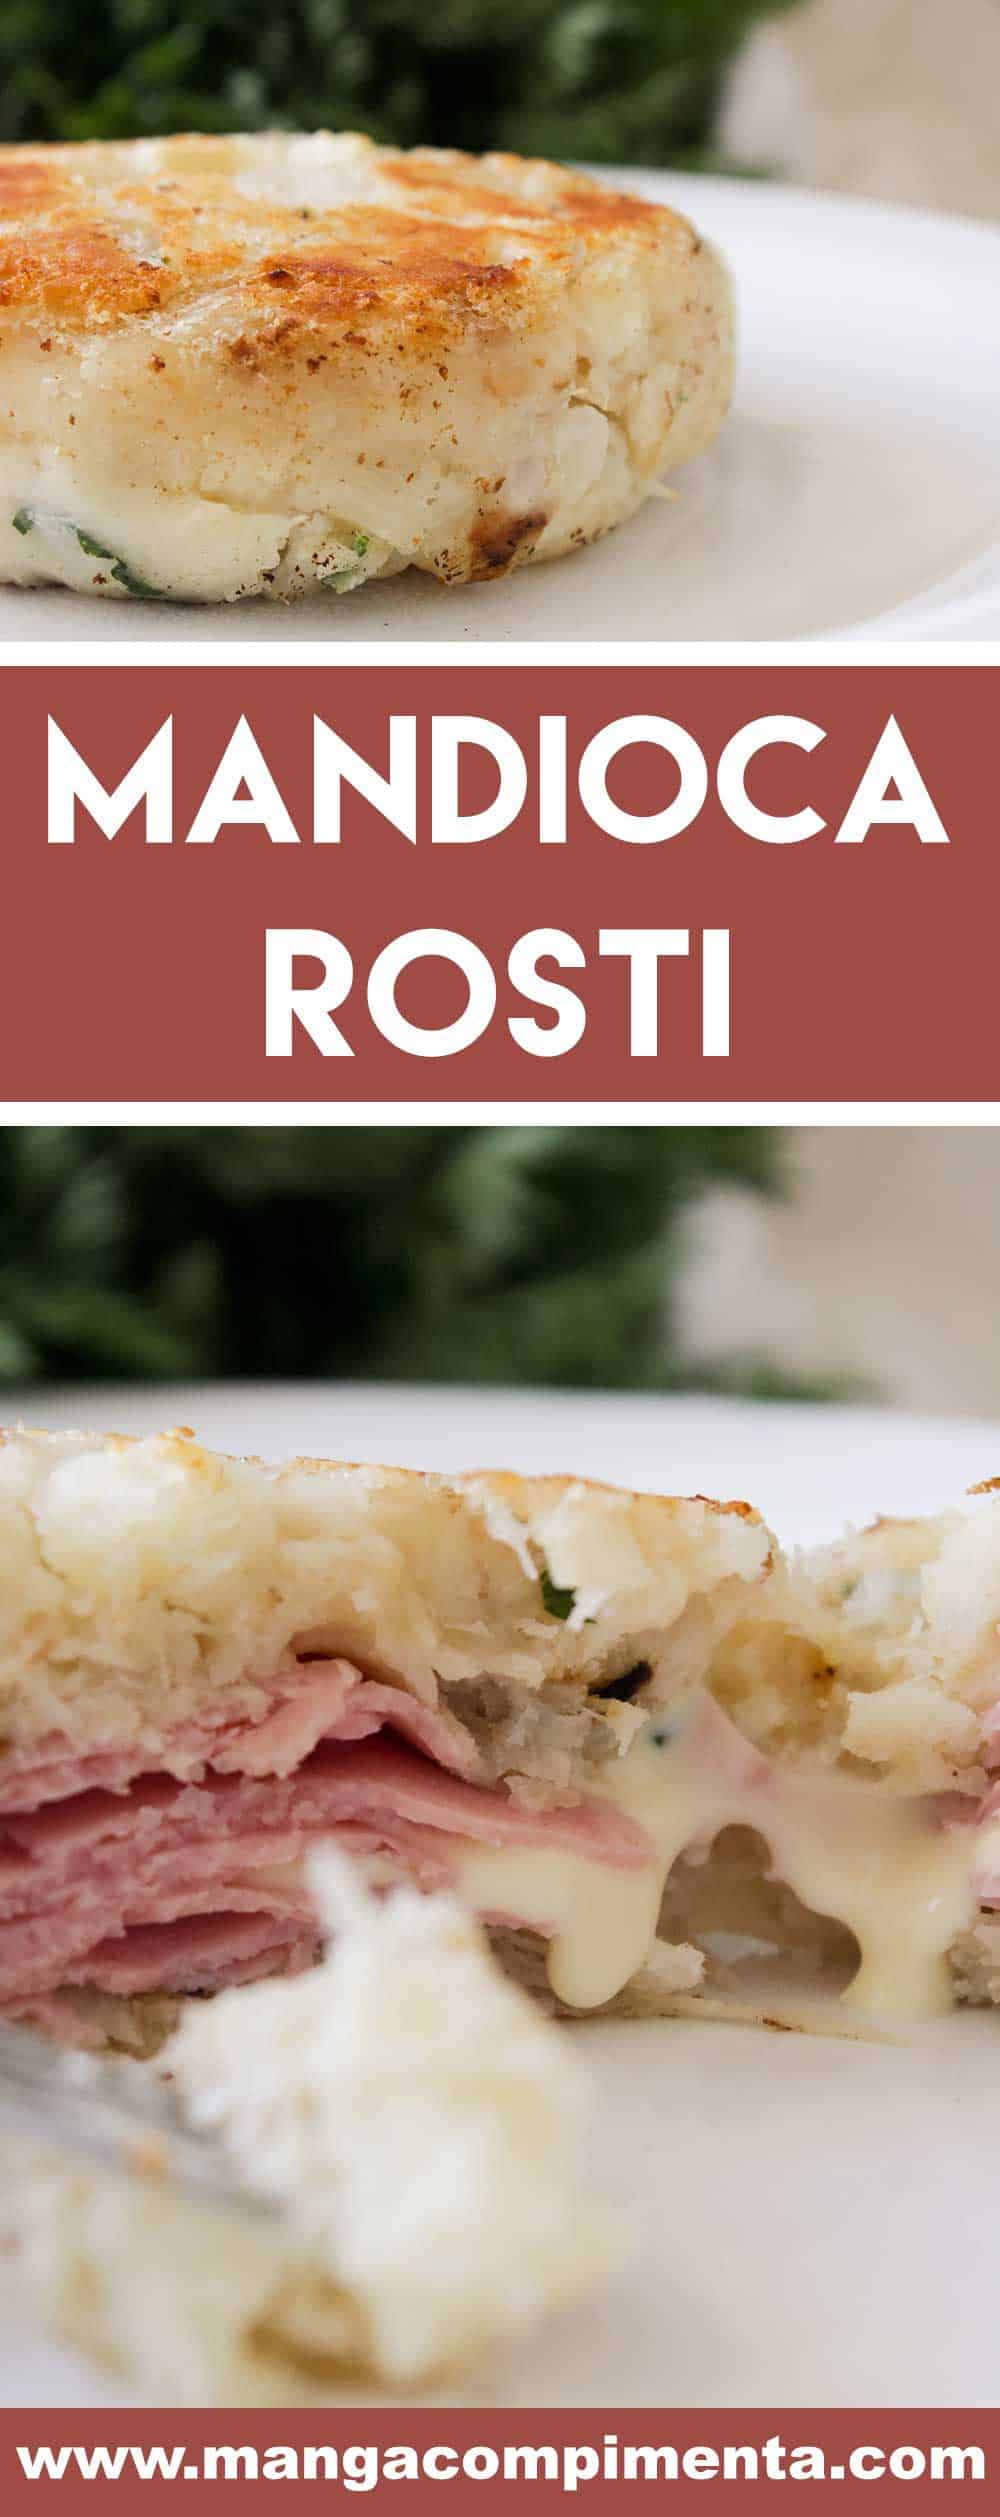 Receita de Mandioca Rosti – um prato delicioso para o final de semana com a família ou amigos!